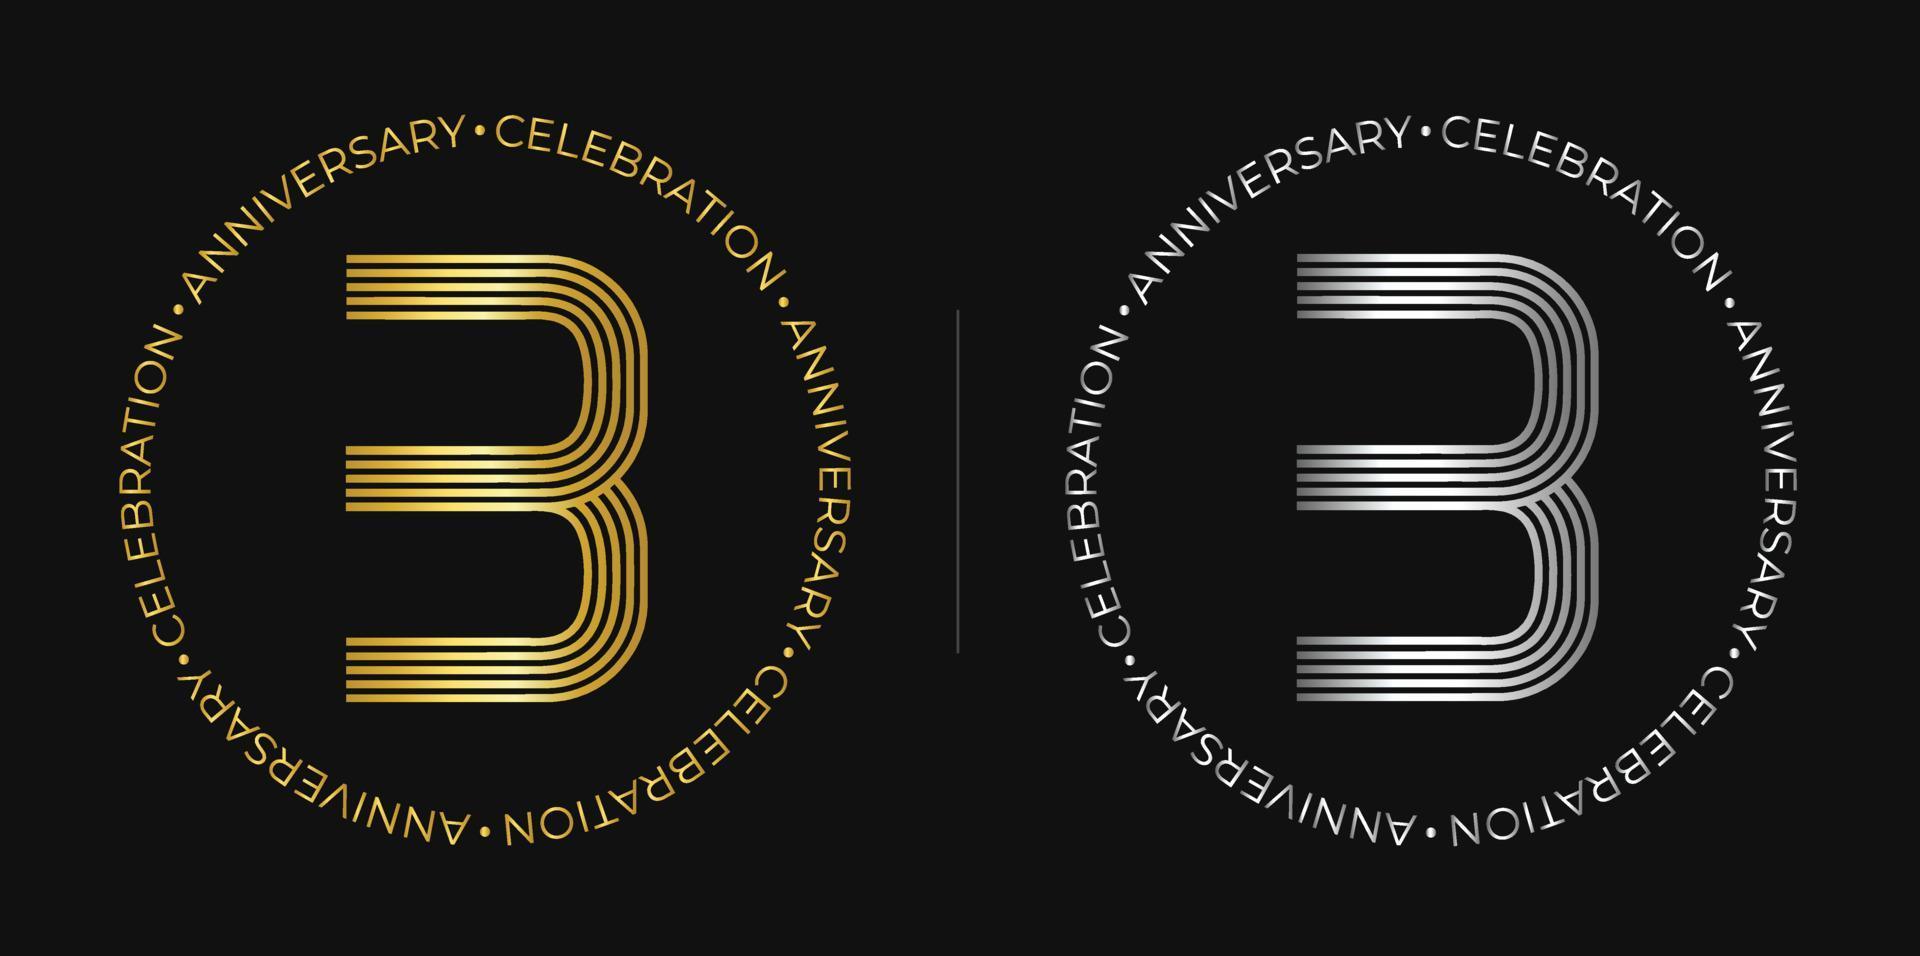 3er cumpleaños. Banner de celebración de aniversario de tres años en colores dorado y plateado. logotipo circular con diseño de número original en líneas elegantes. vector